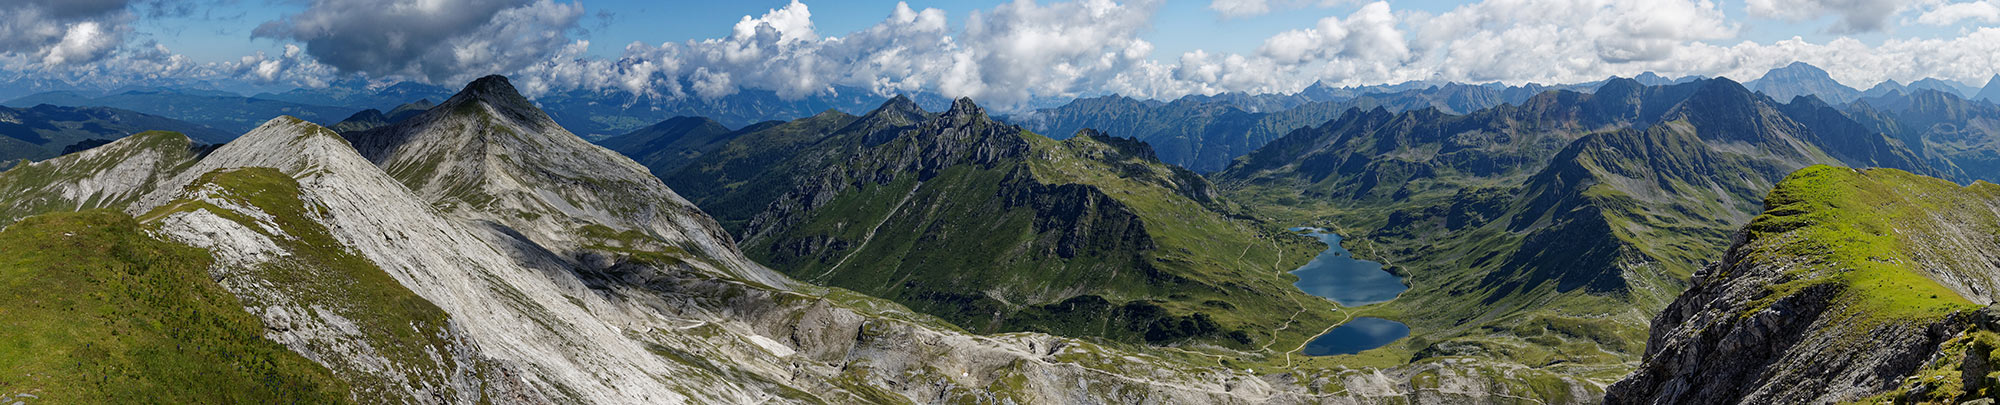  Bergtouren - nützliche Infos  – www.ksuppan.at